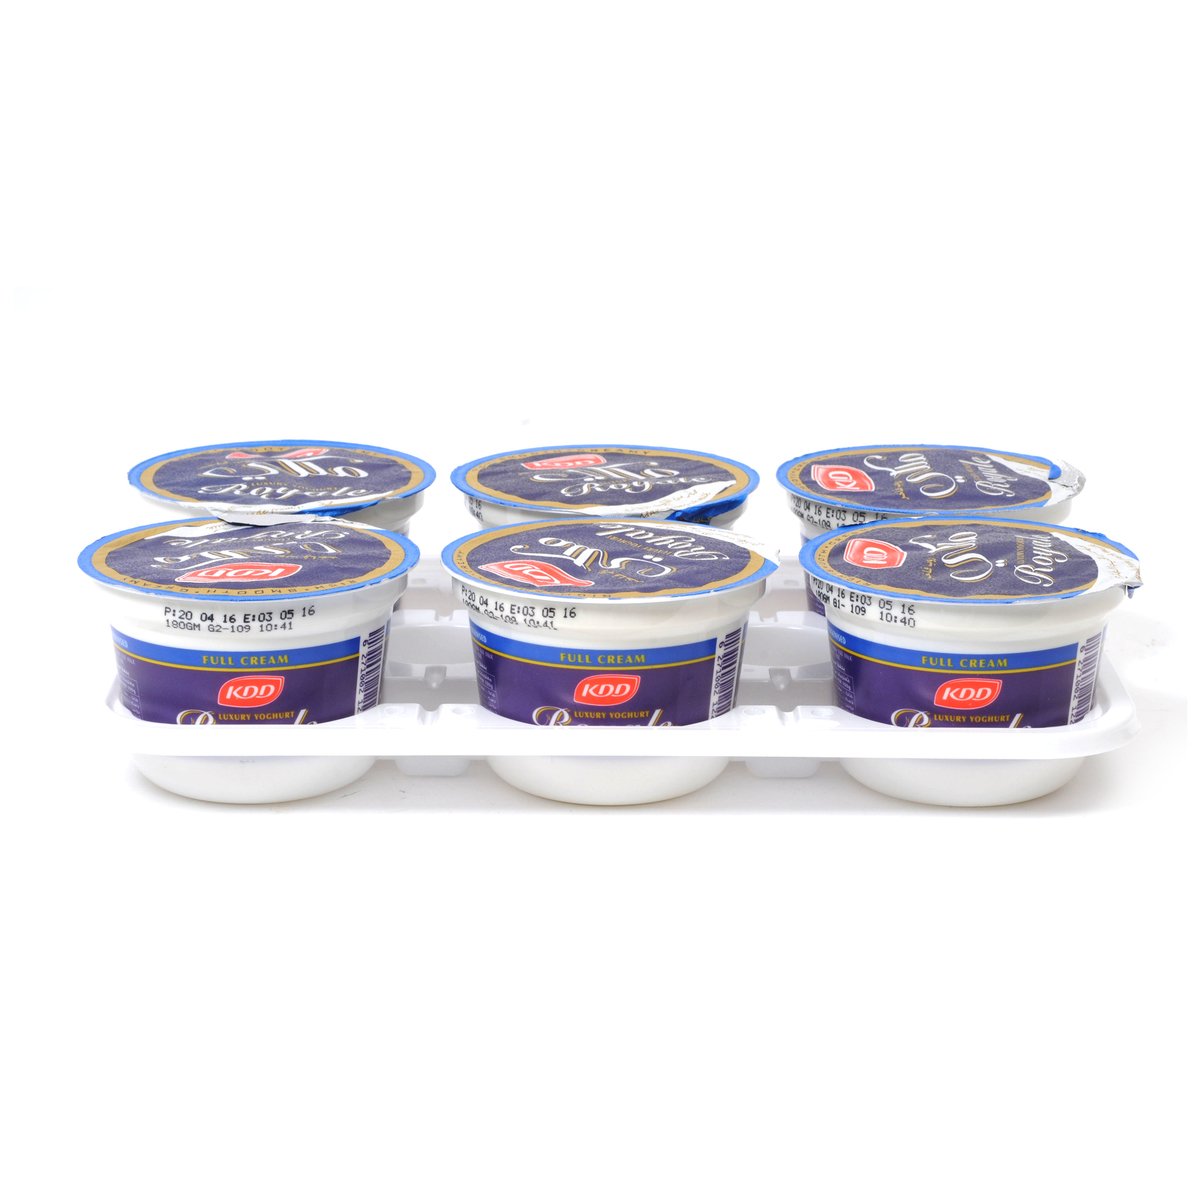 KDD Royale Full Cream Luxury Yoghurt 6 x 180g